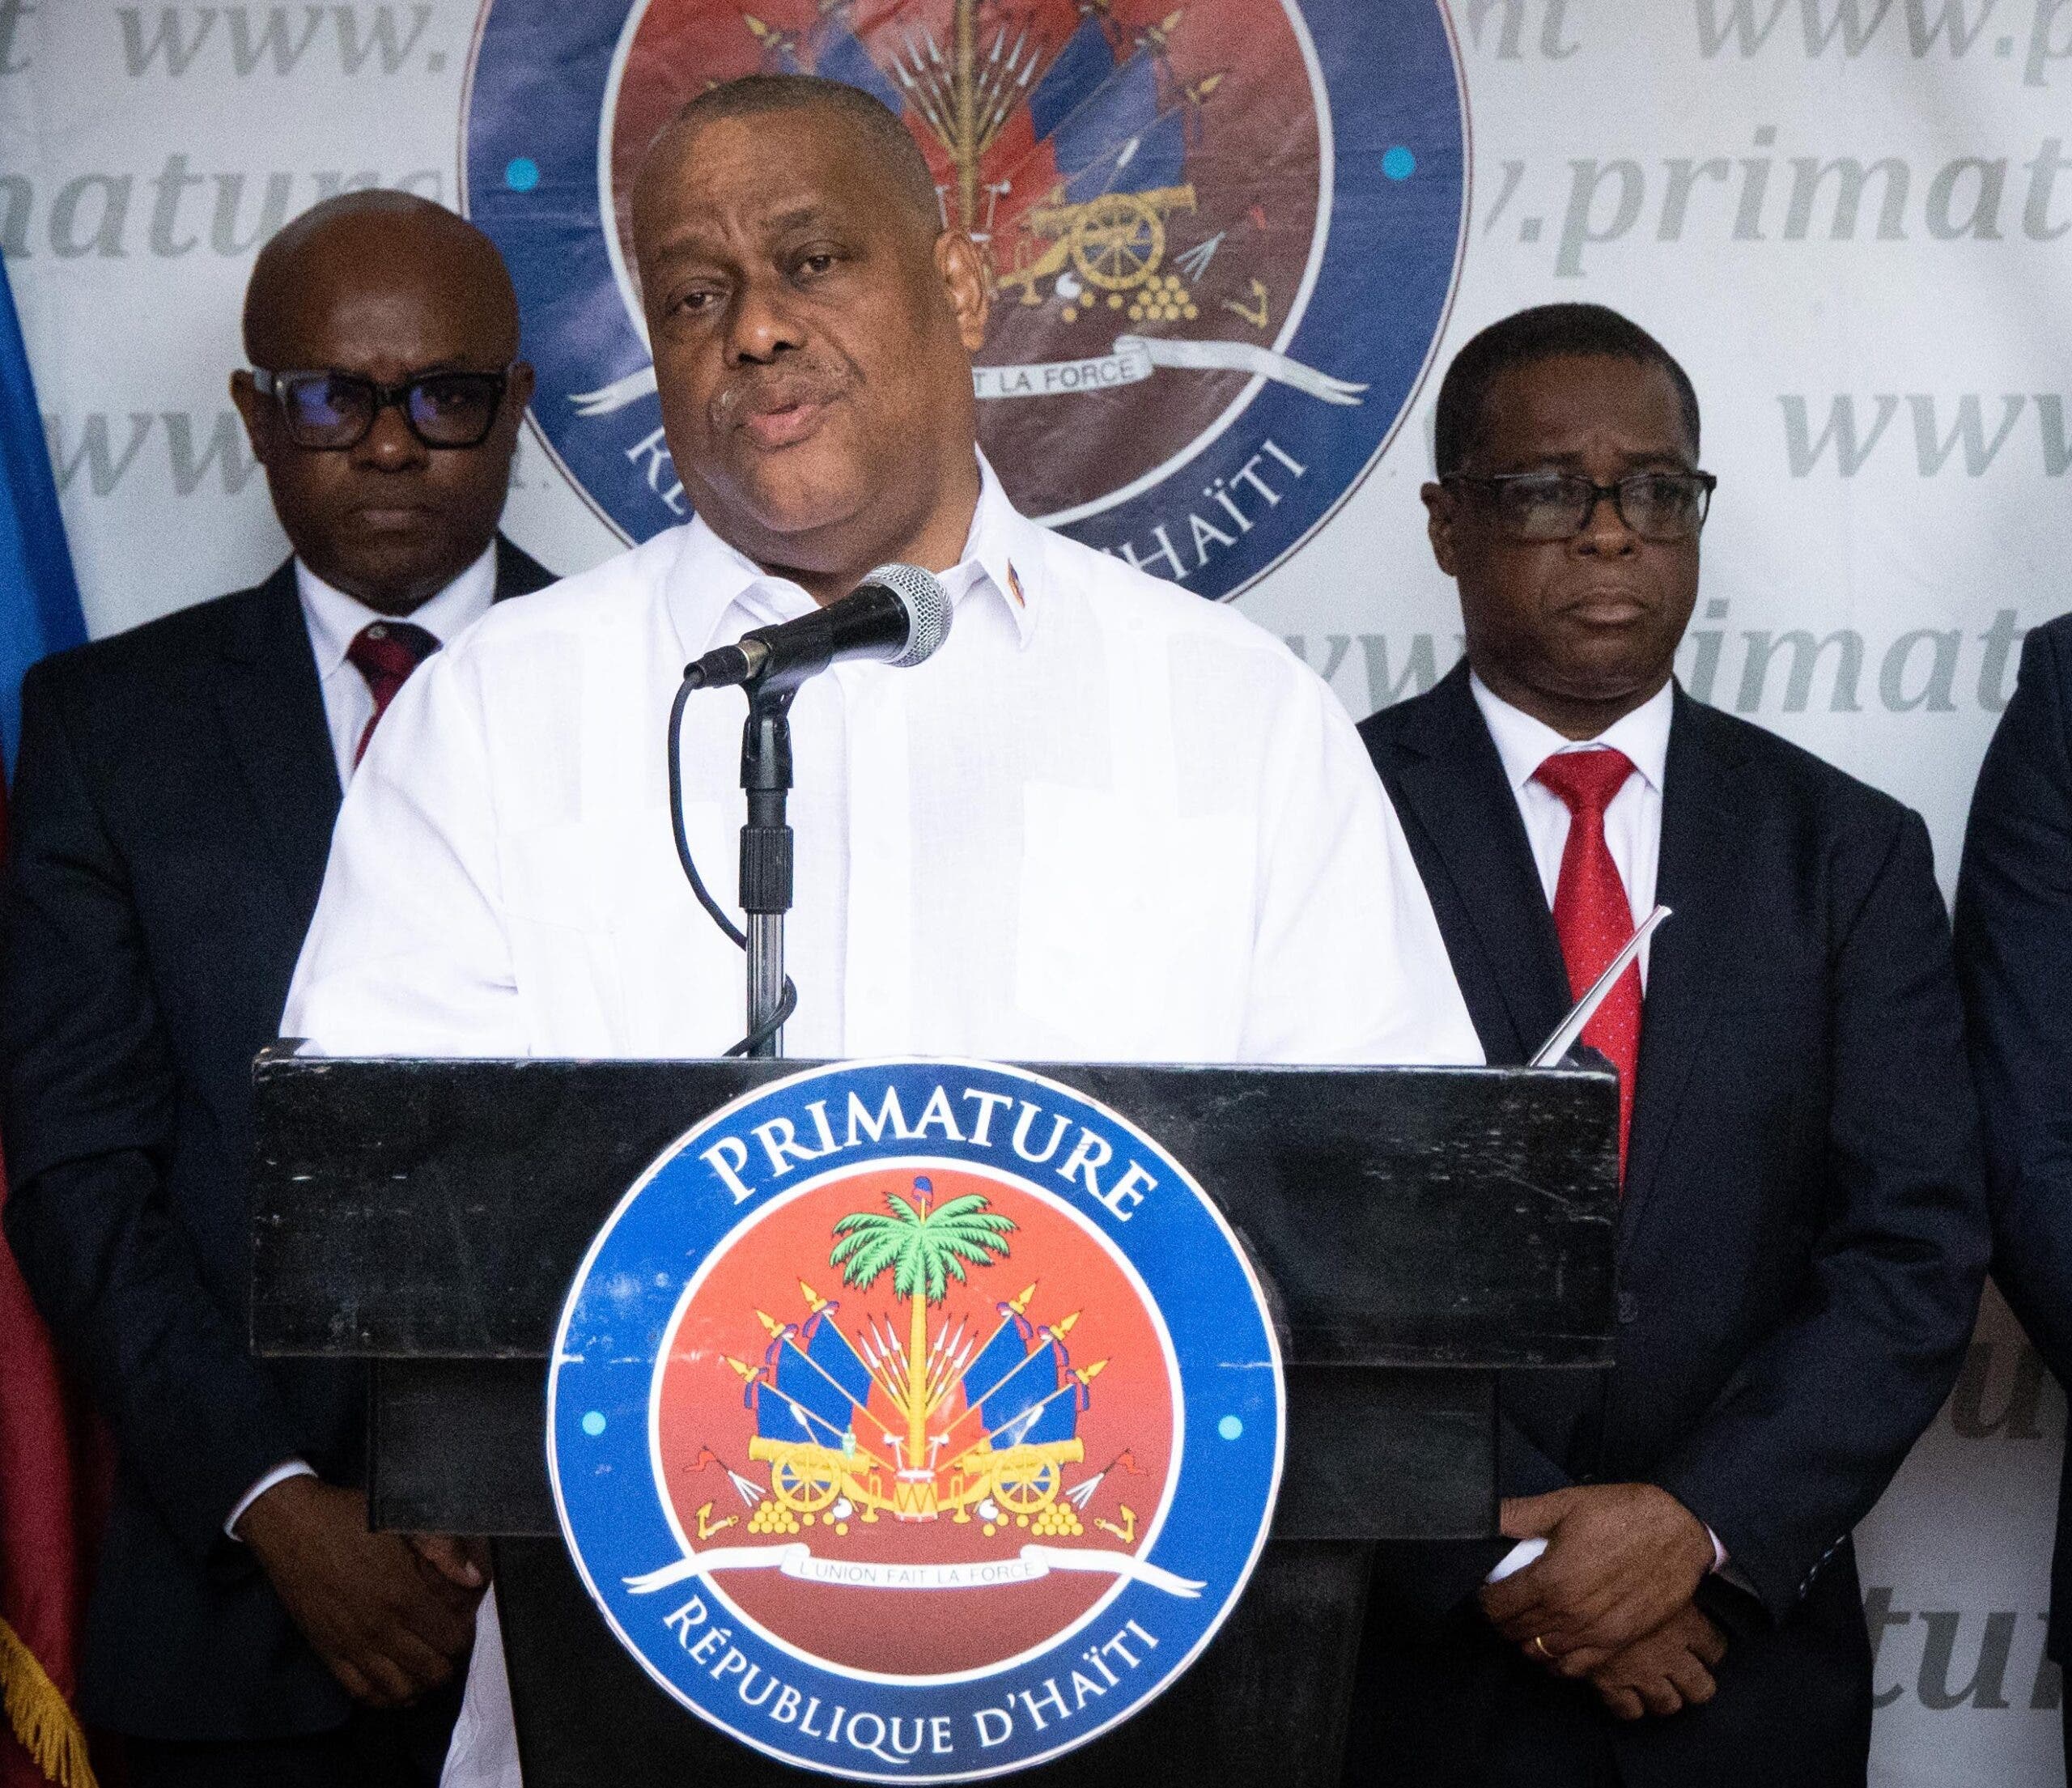 El primer ministro de Haití critica la corrupción de ese país y actuará frente a ella